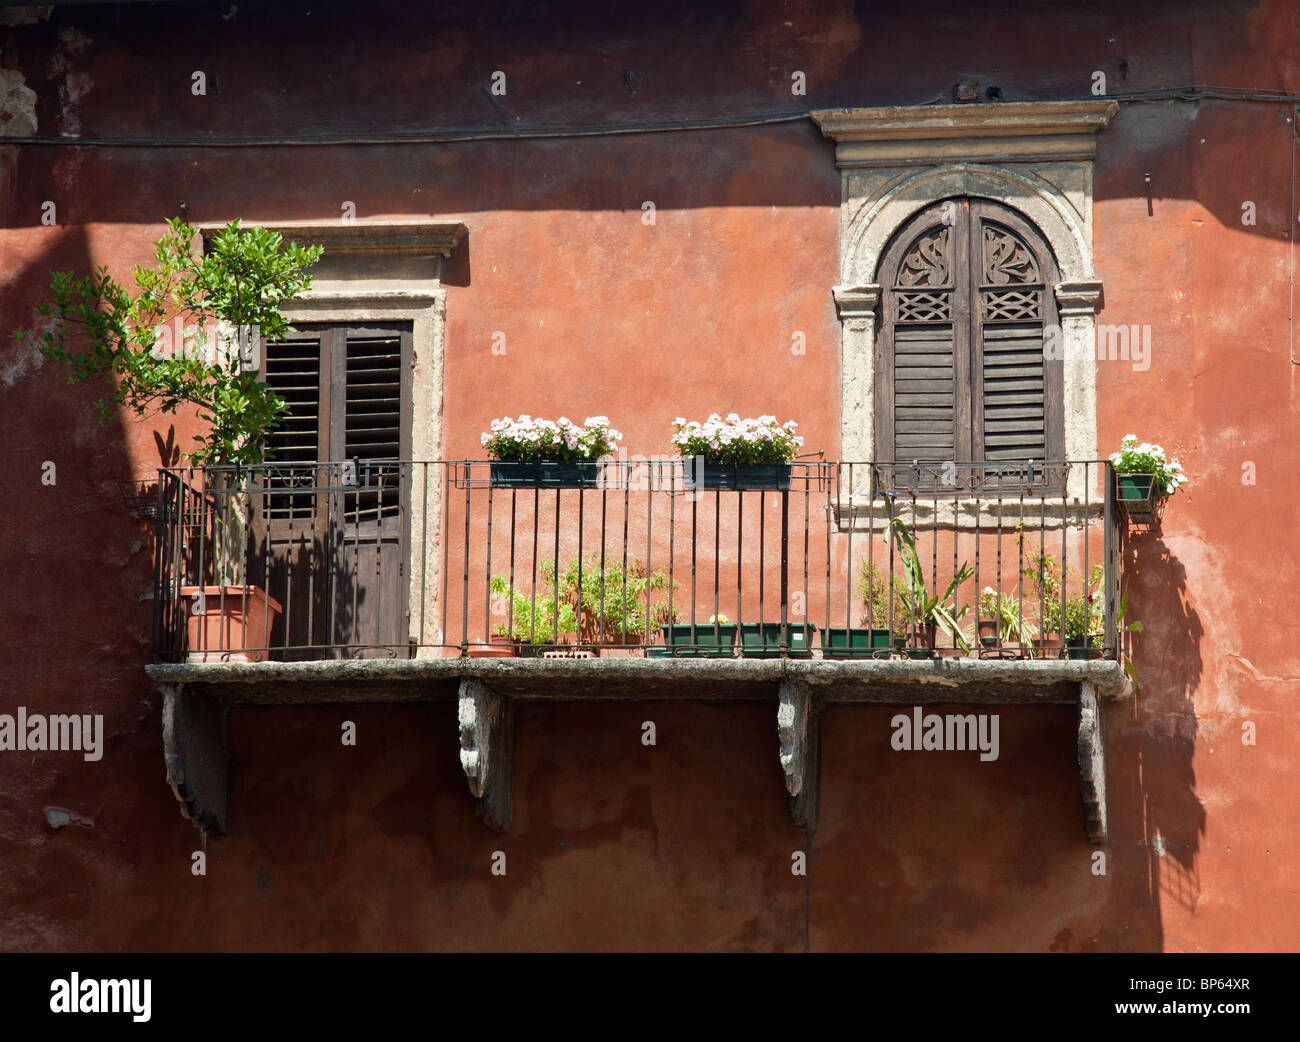 Ancient balcony on a house in Verona, Italy Stock Photo